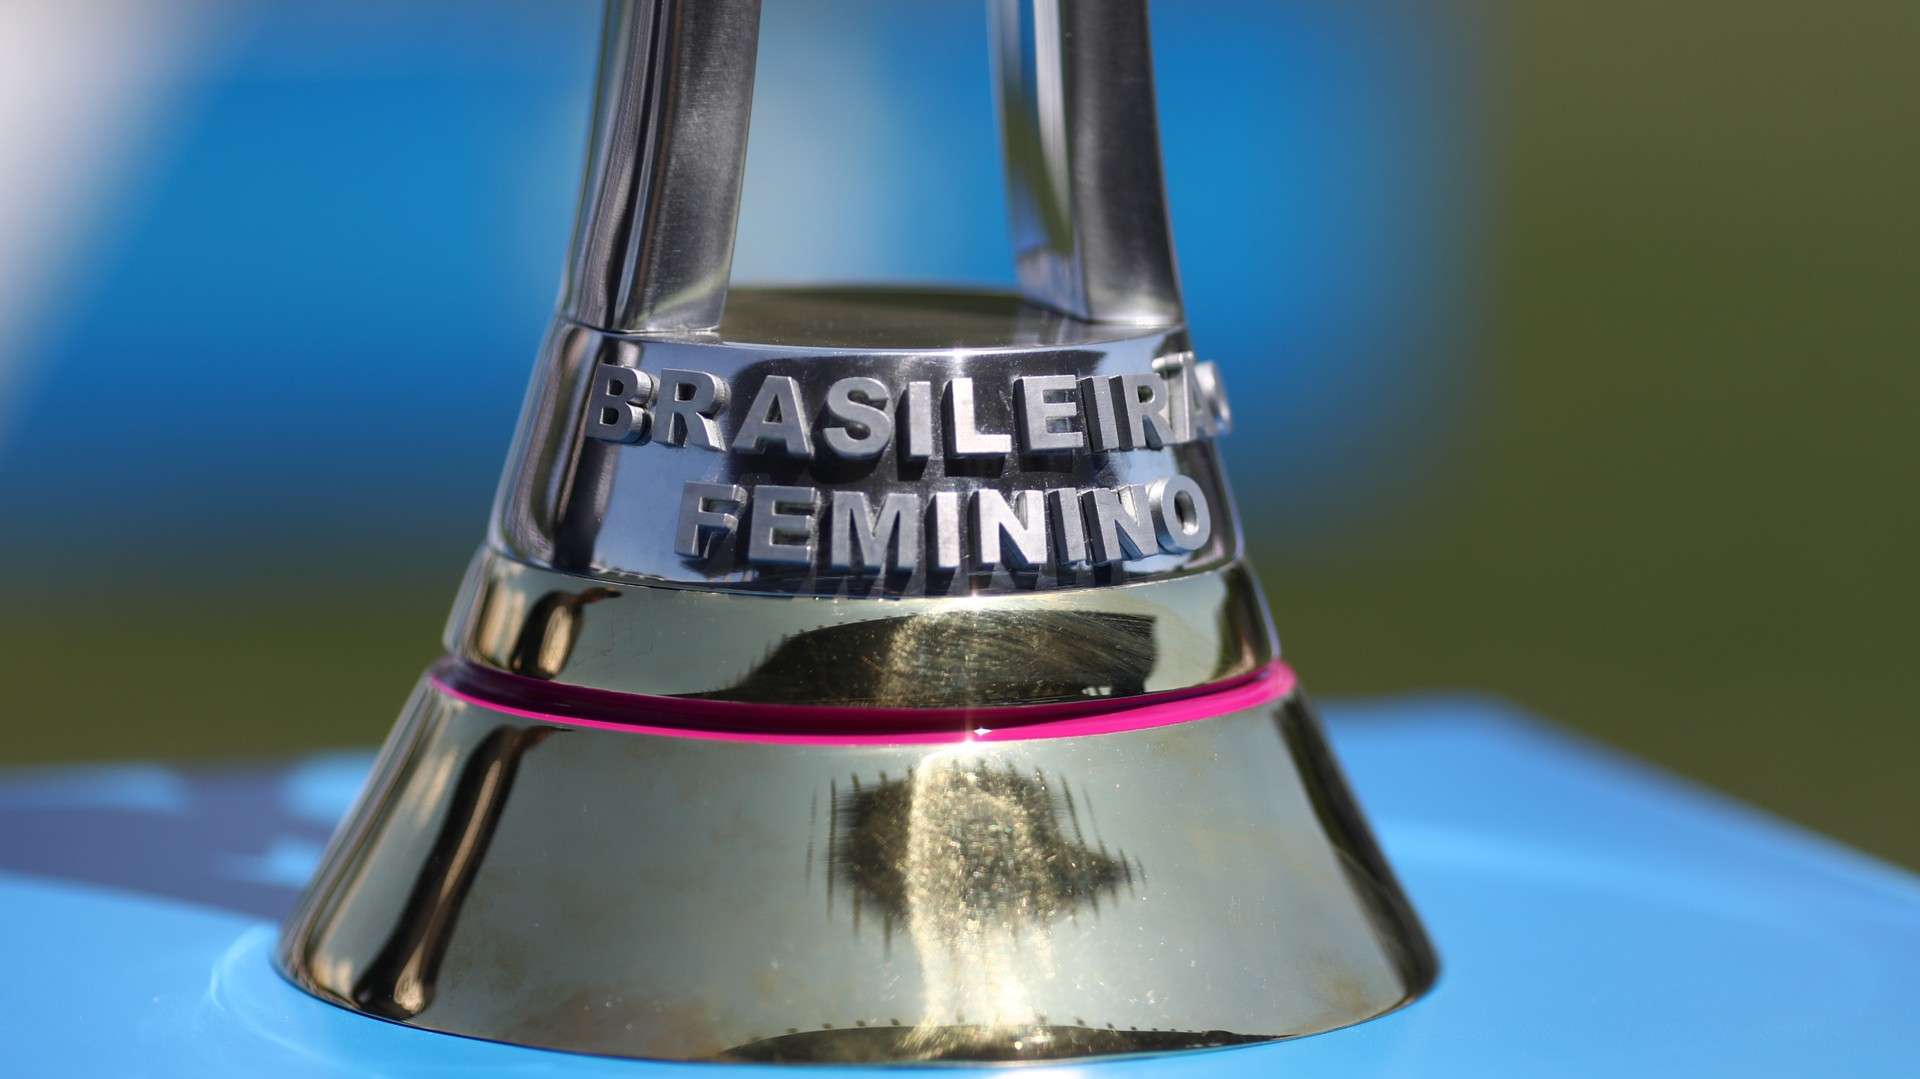 Detalhe troféu Brasileirão feminino Série A1 2020